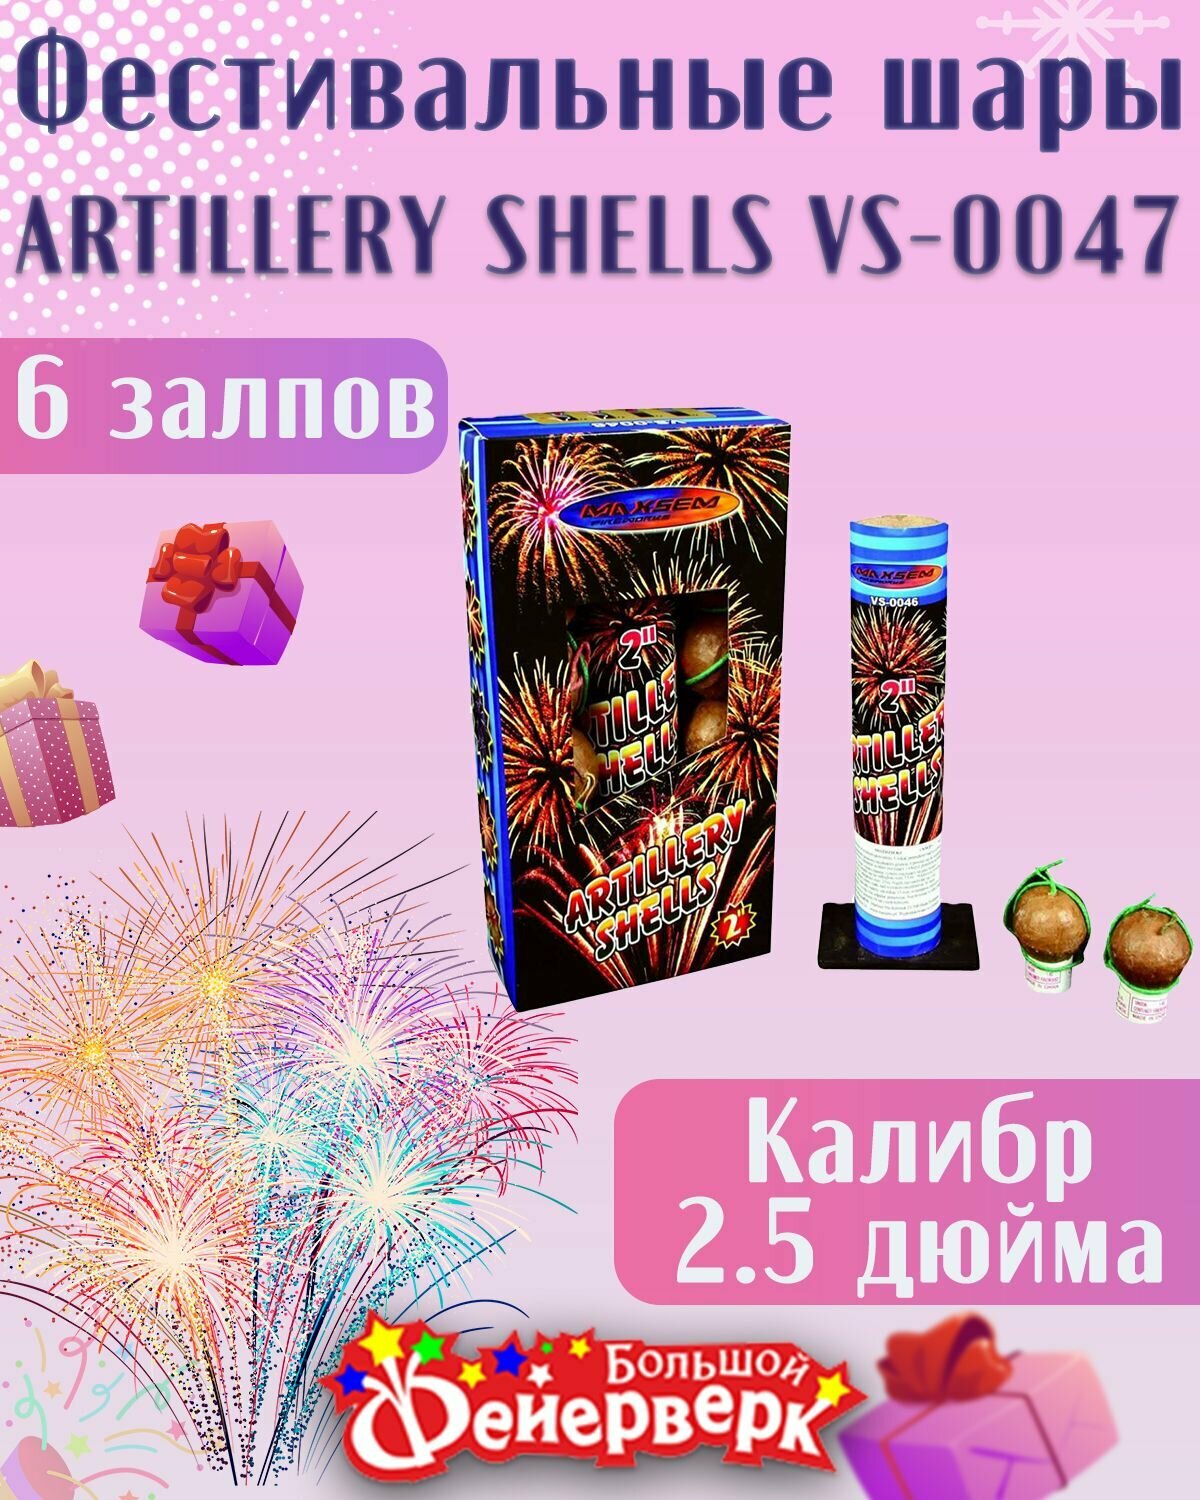 Фестивальные шары ARTILLERY SHELLS VS-0047 калибр 2,5 дюйма на 6 залпов